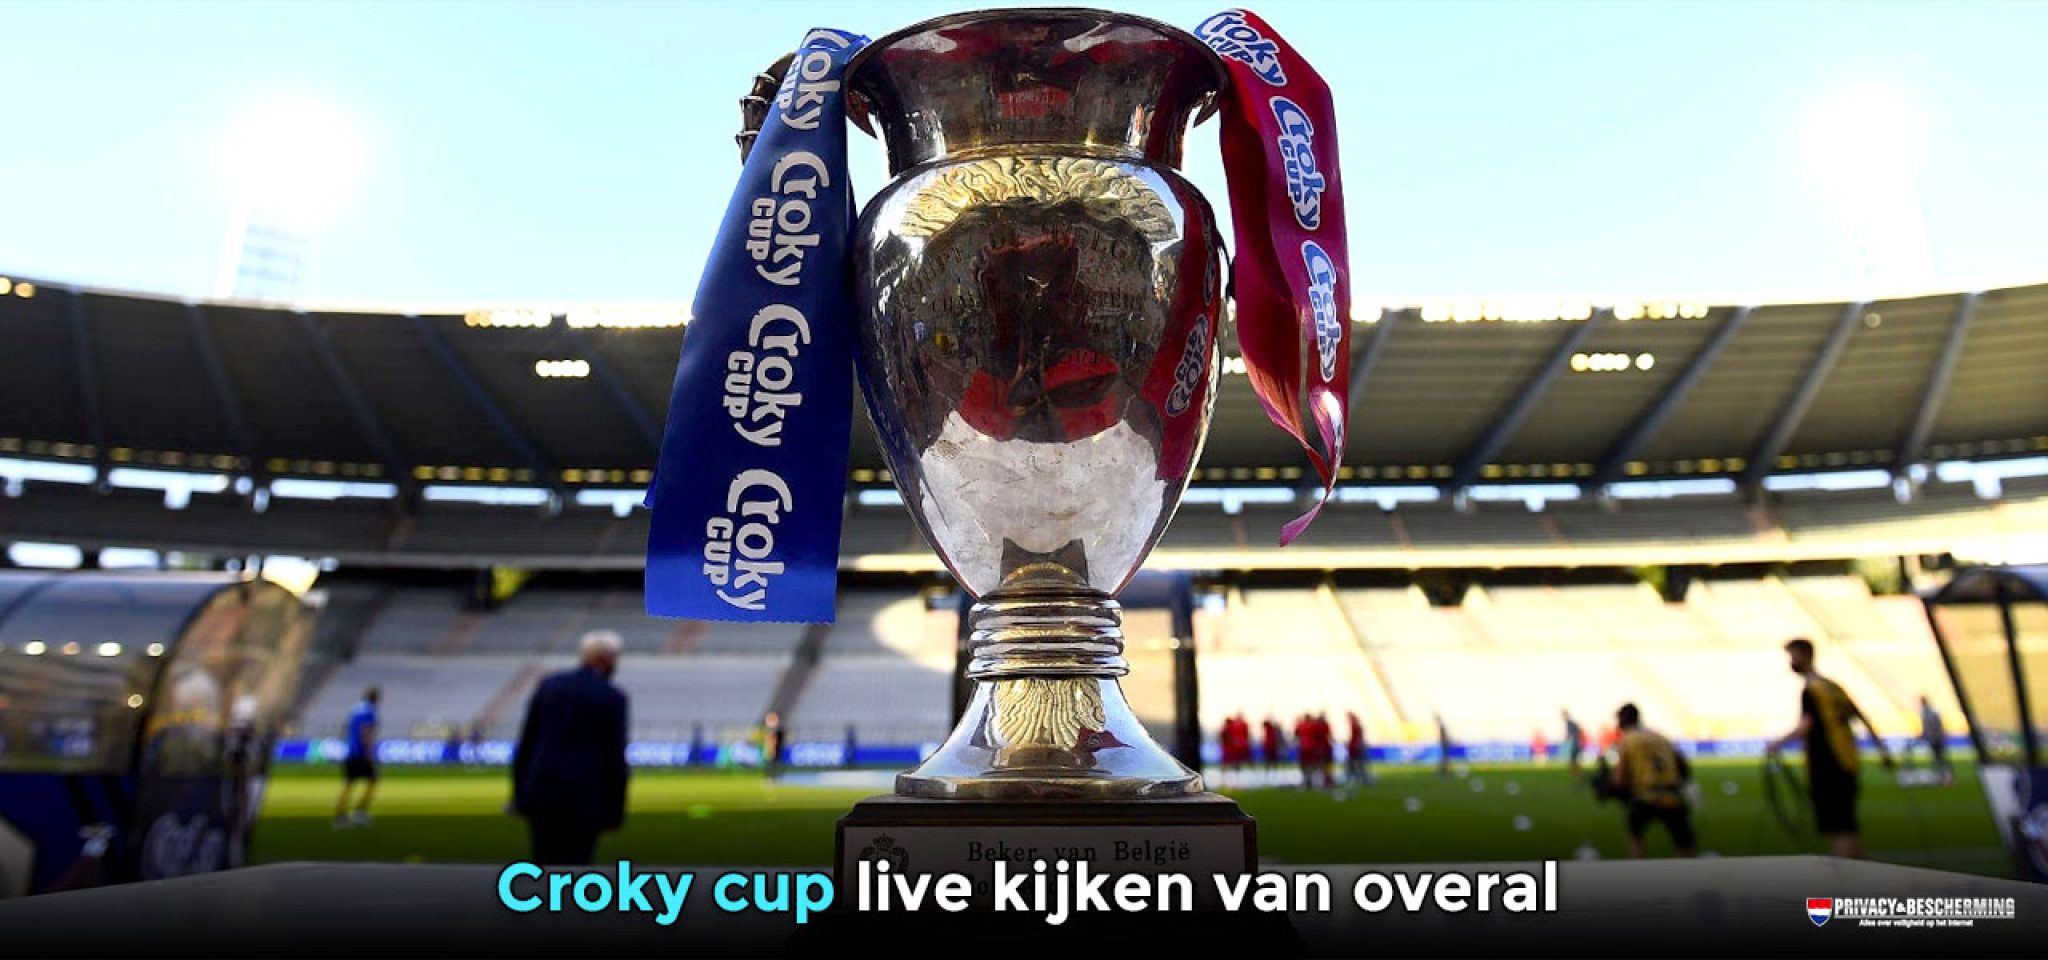 Kijk de Croky cup live van overal in 2023! PrivacyEnBescherming.be